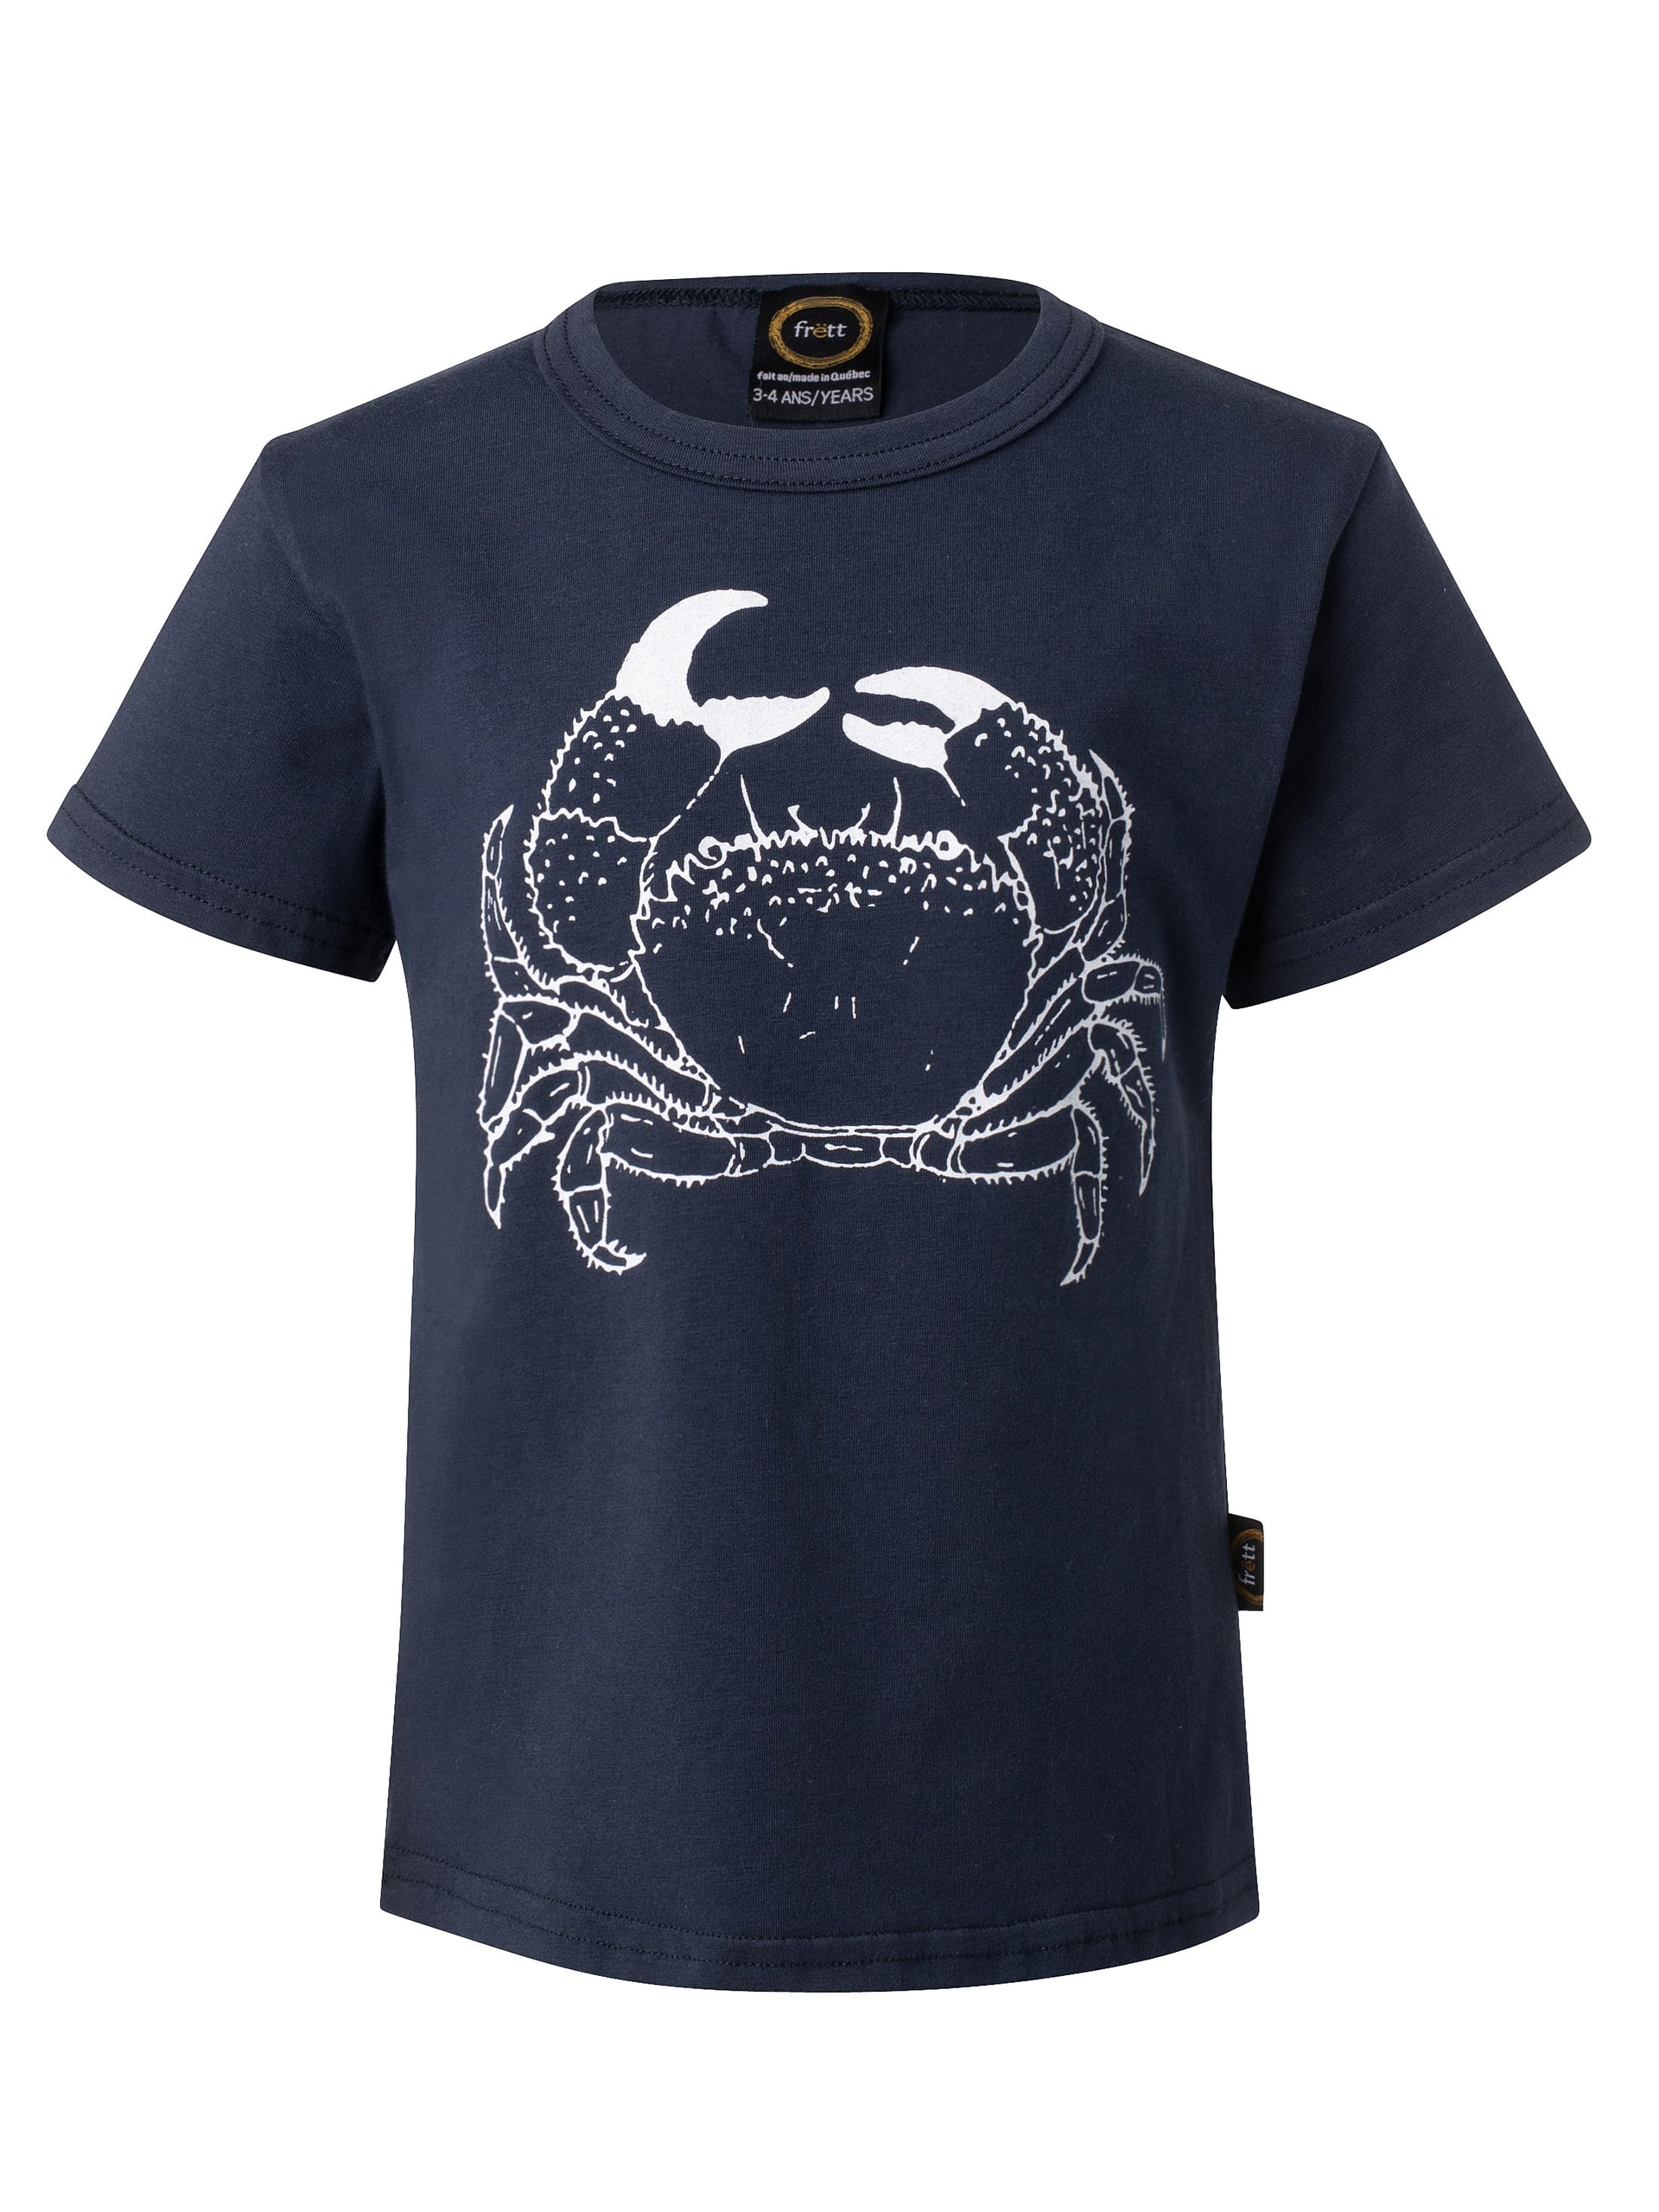 T-shirt enfant-UNISEXE crabe-coton bio-marine-unisexe-ghost-FC10